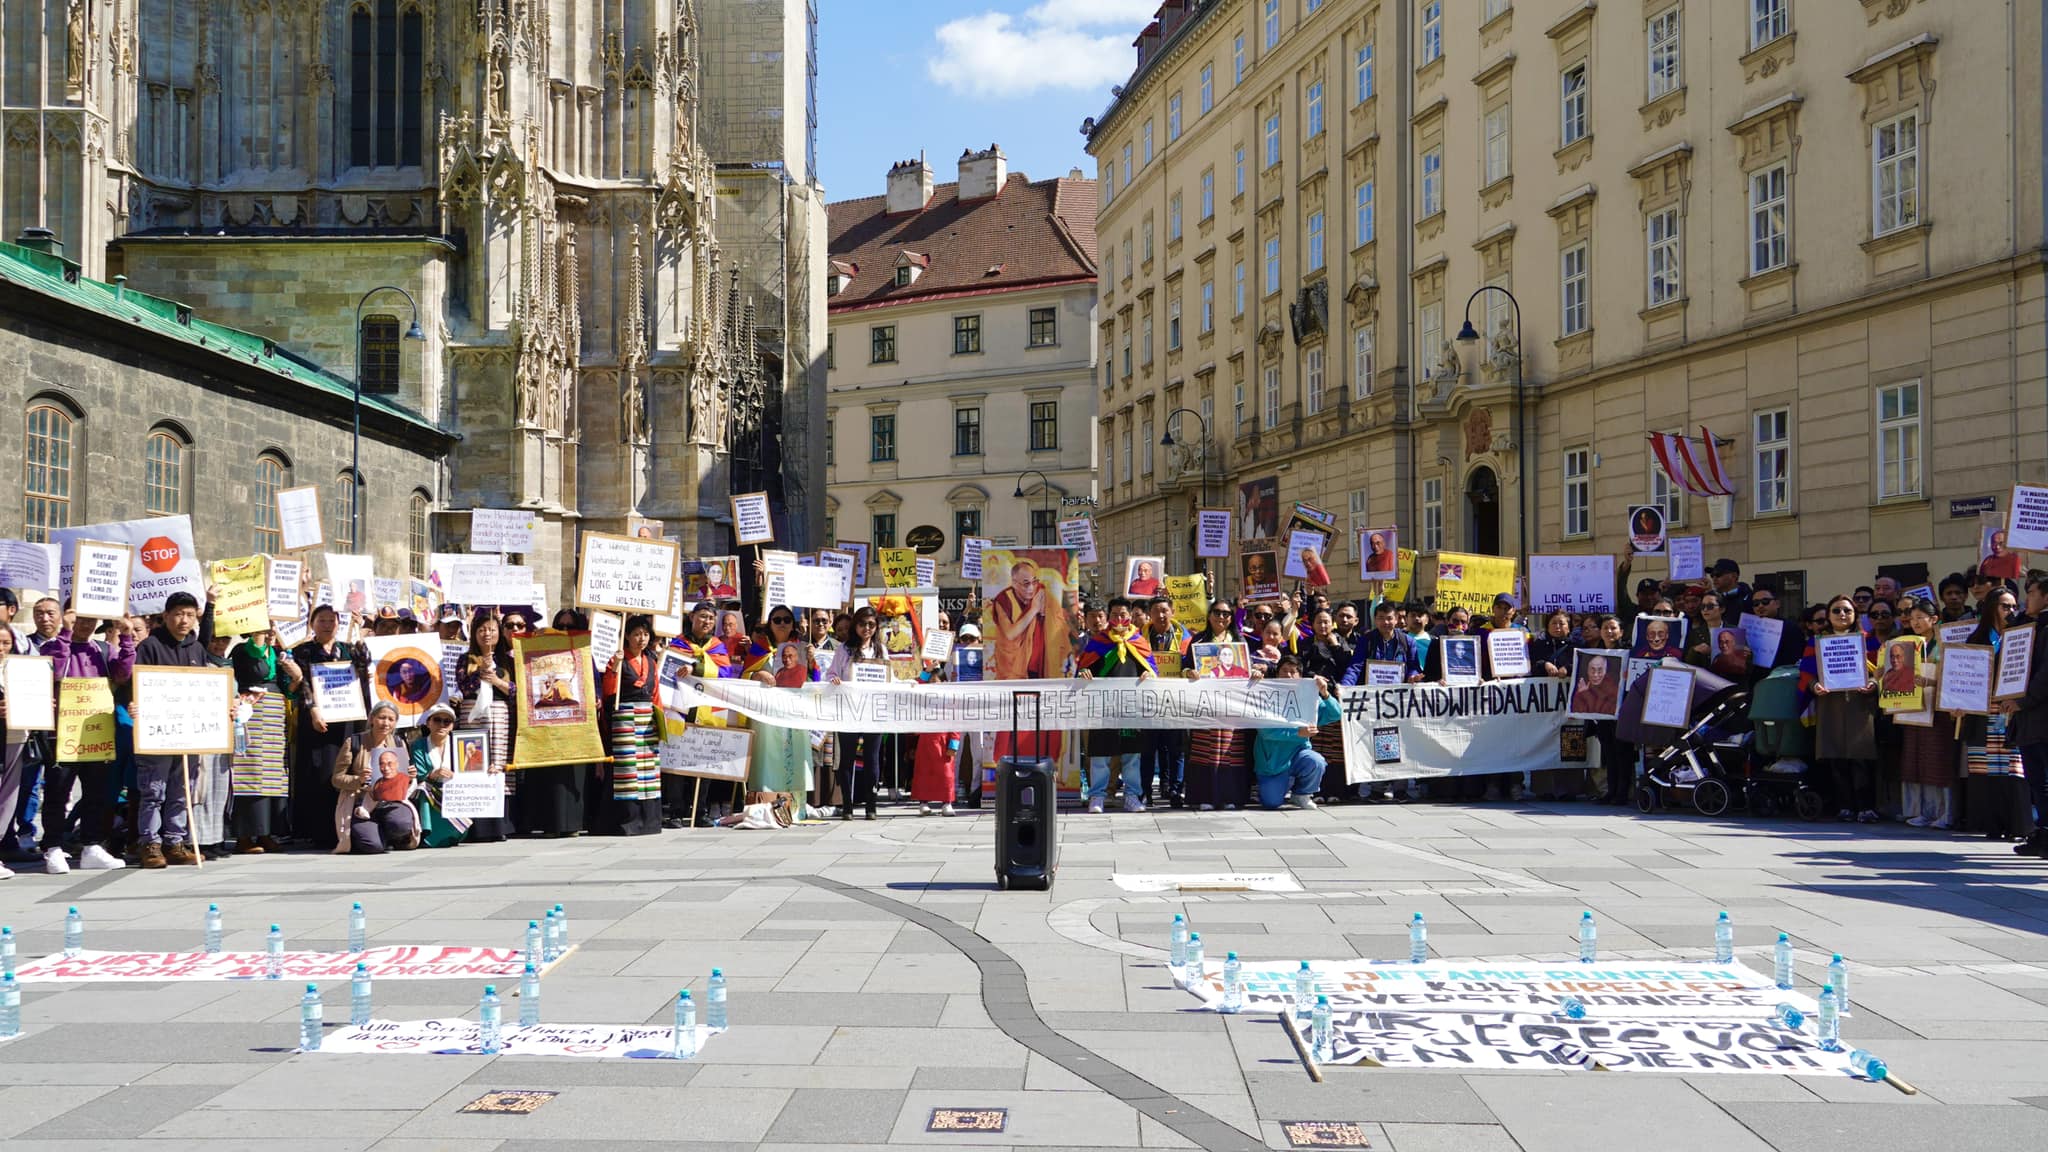 Solidaridätskundgebung der Tibeter in Wien